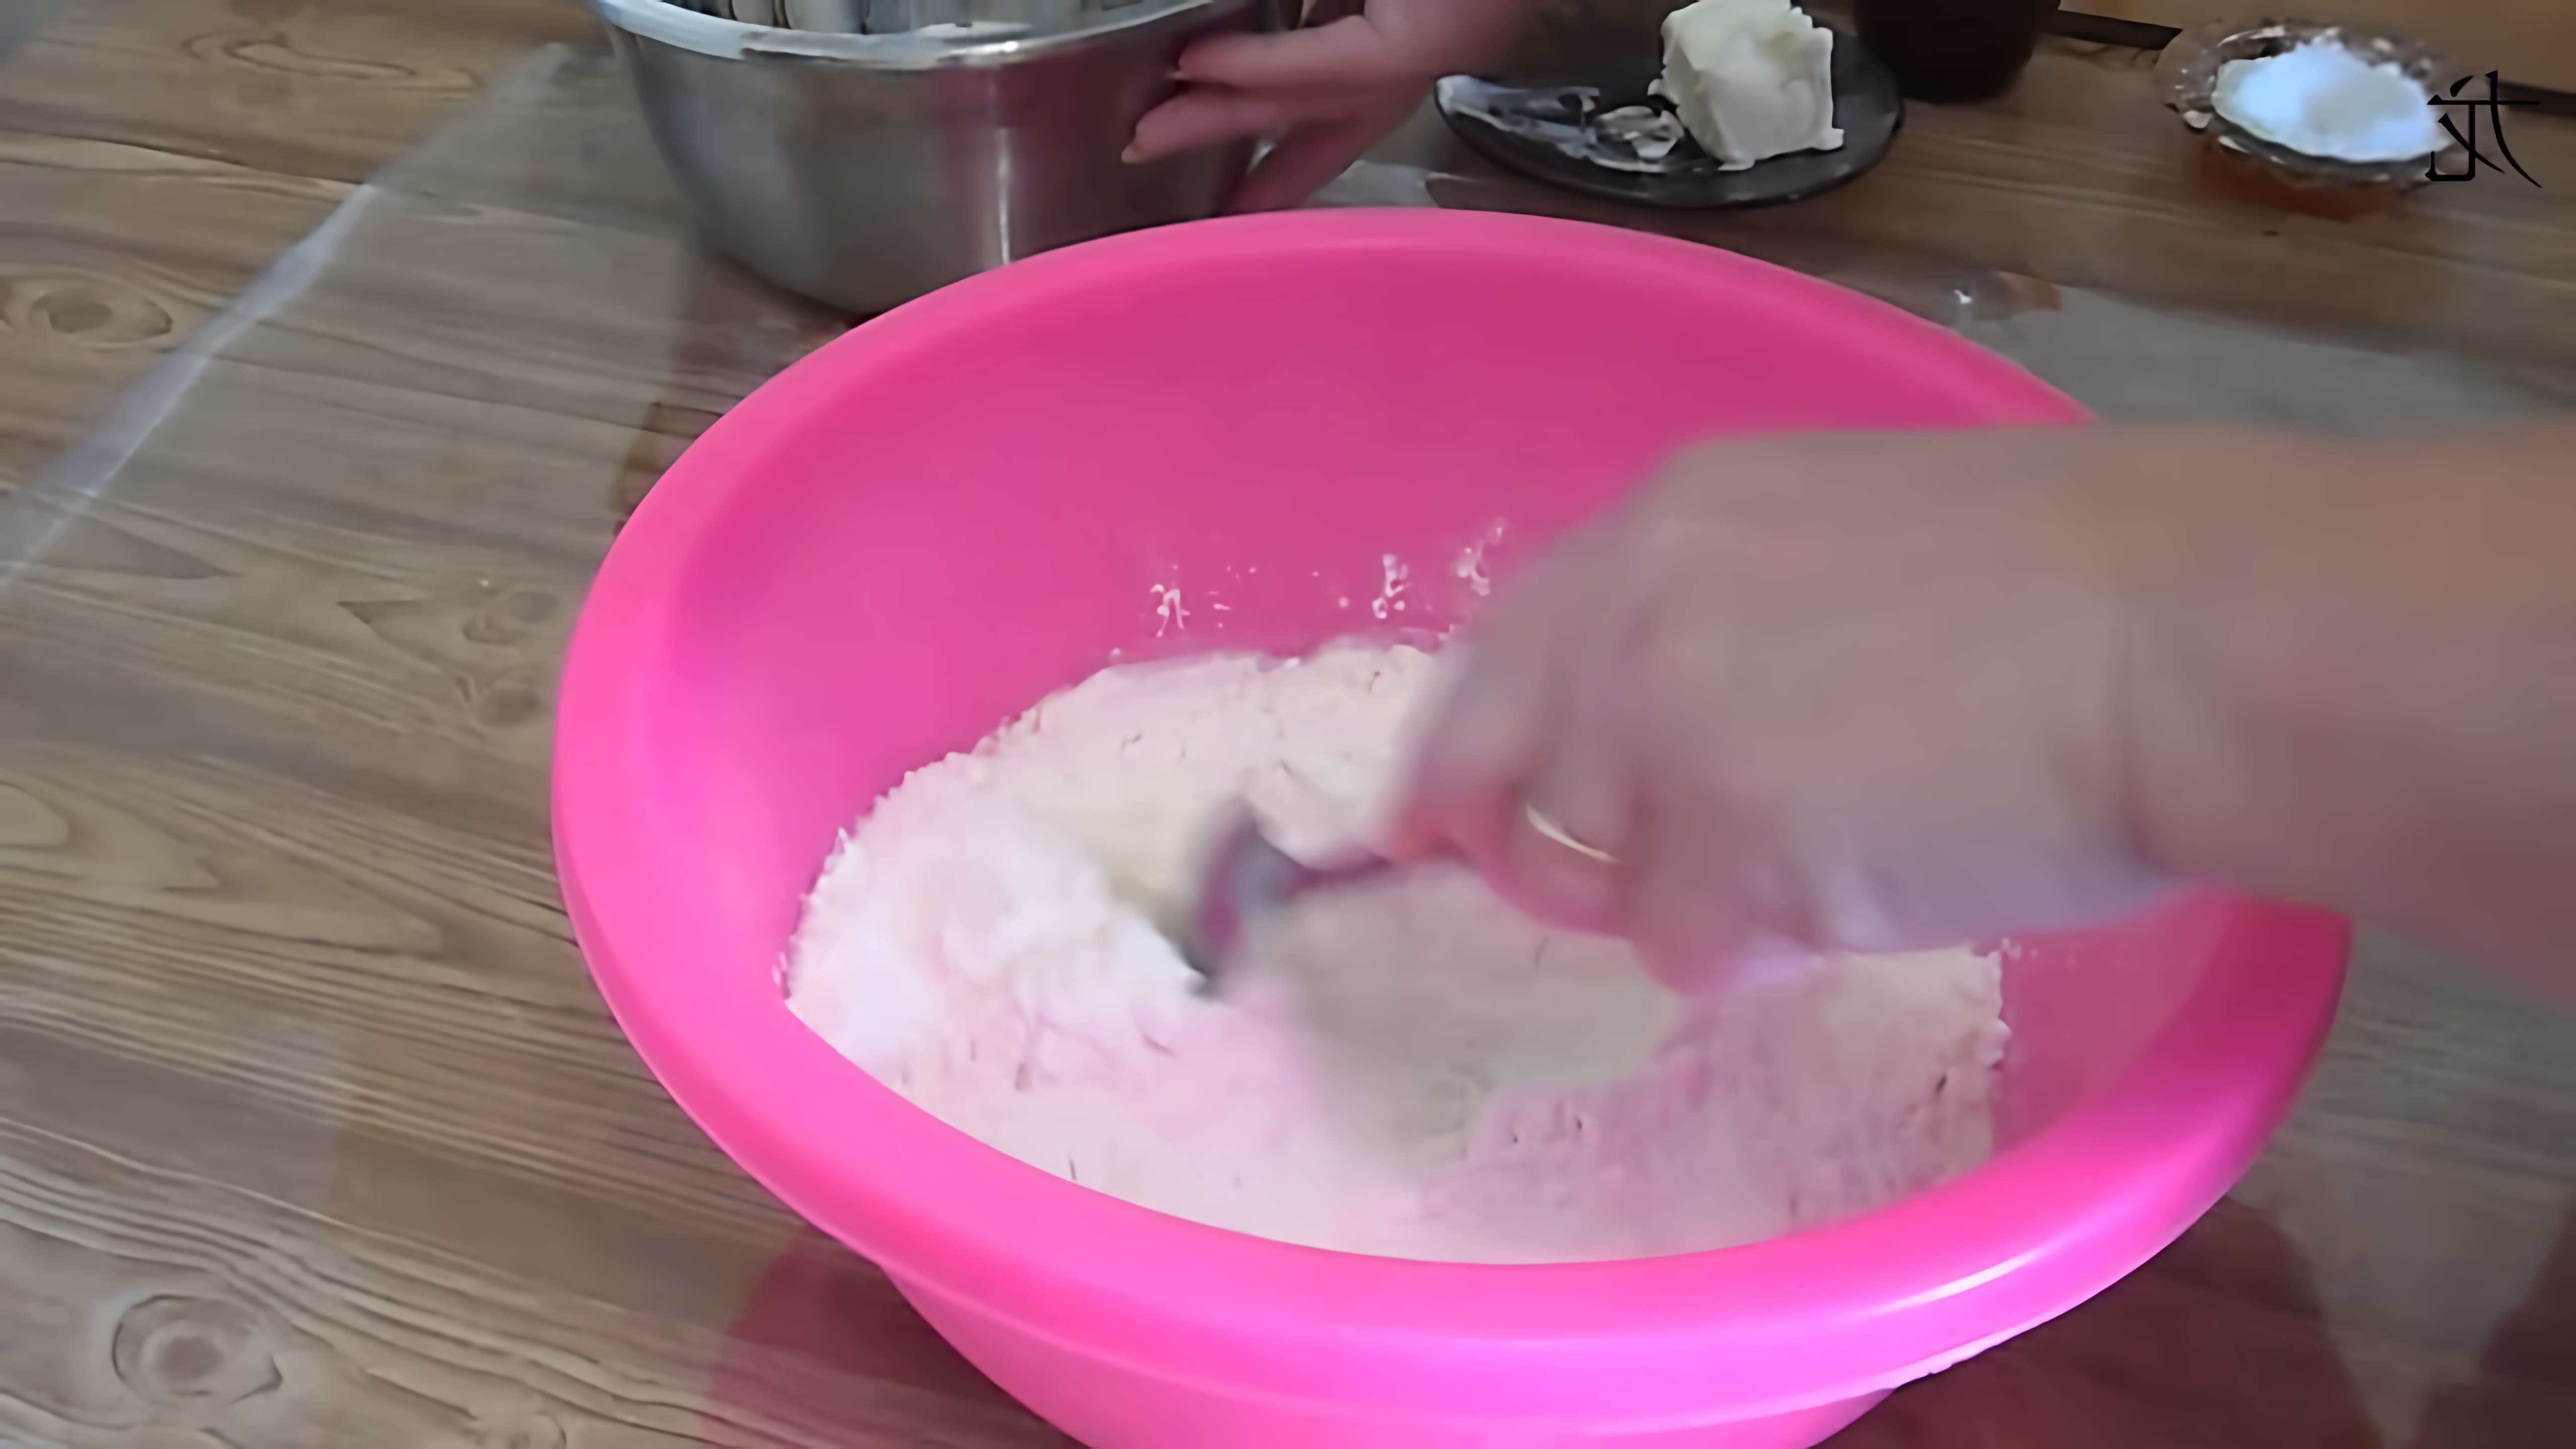 В этом видео демонстрируется процесс приготовления теста для хычинов, традиционной кавказской лепешки с начинкой